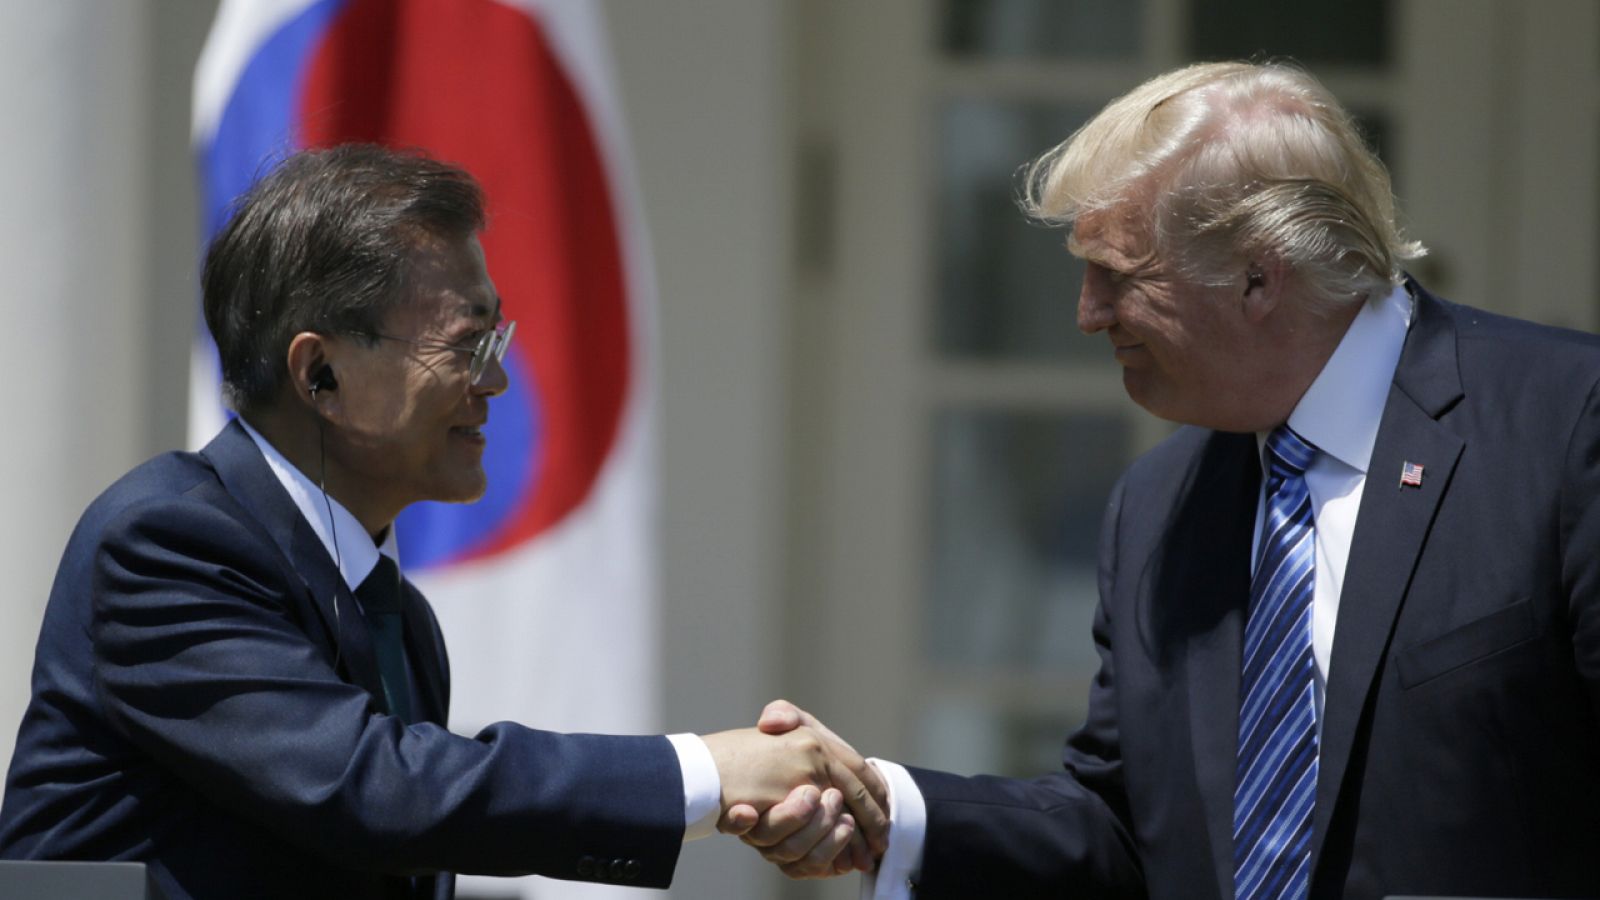 El presidente estadounidense Donald Trump y su homólogo surcoreano Moon Jae-in se reúnen en Washington